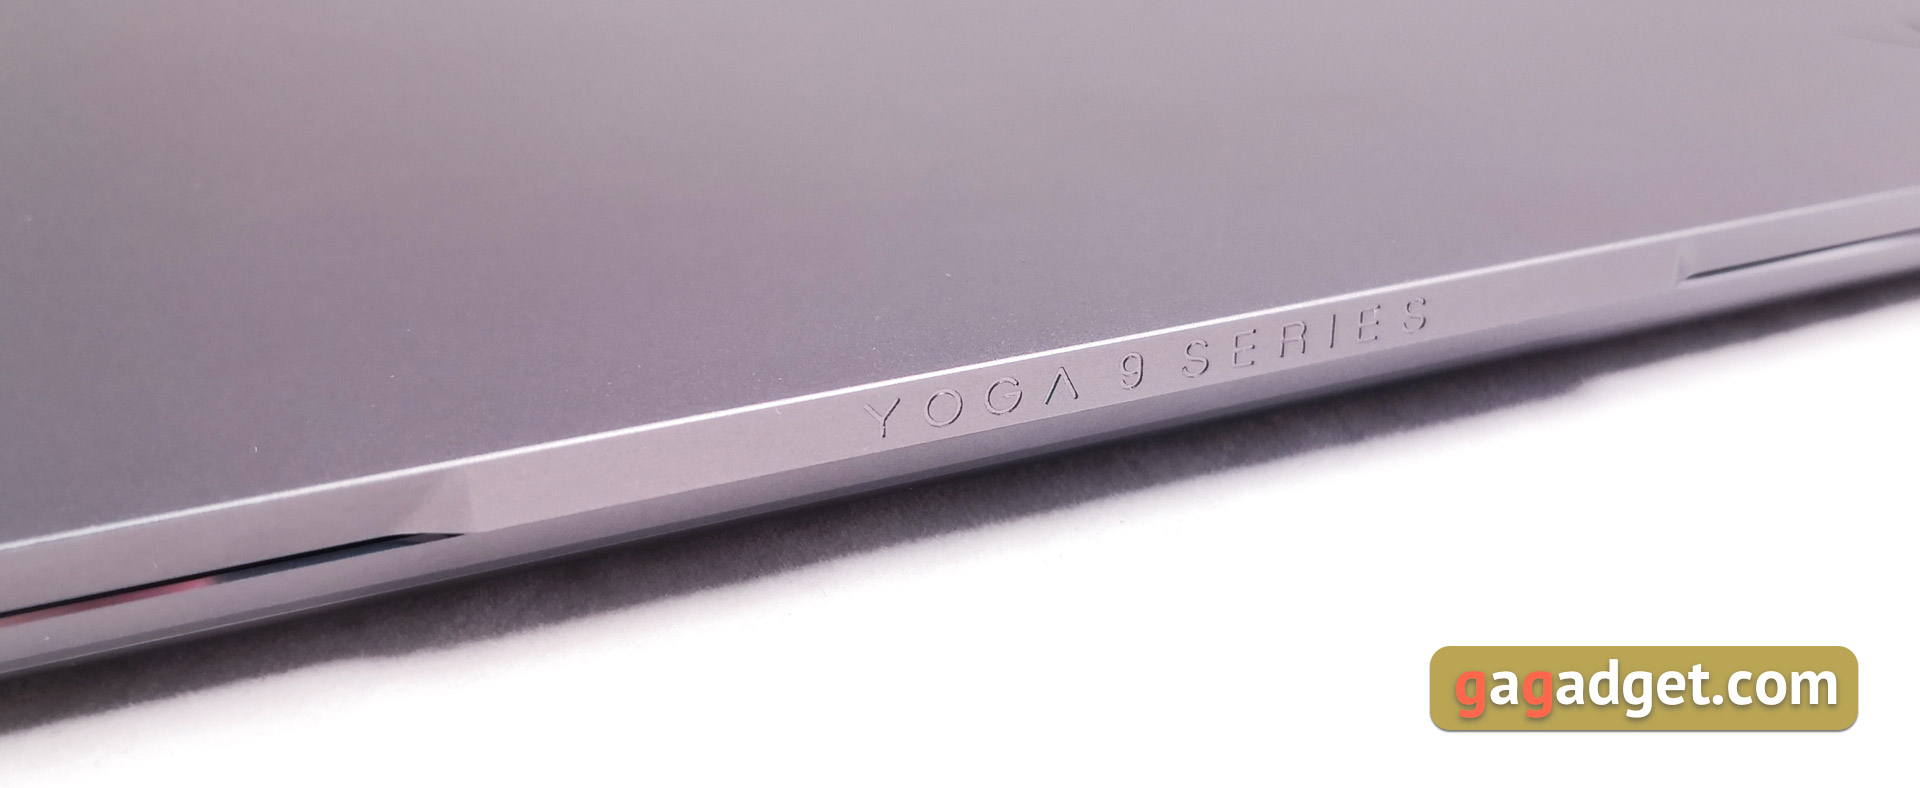 Recenzja Lenovo Yoga S940: teraz nie transformer, ale prestiżowy ultrabook -10